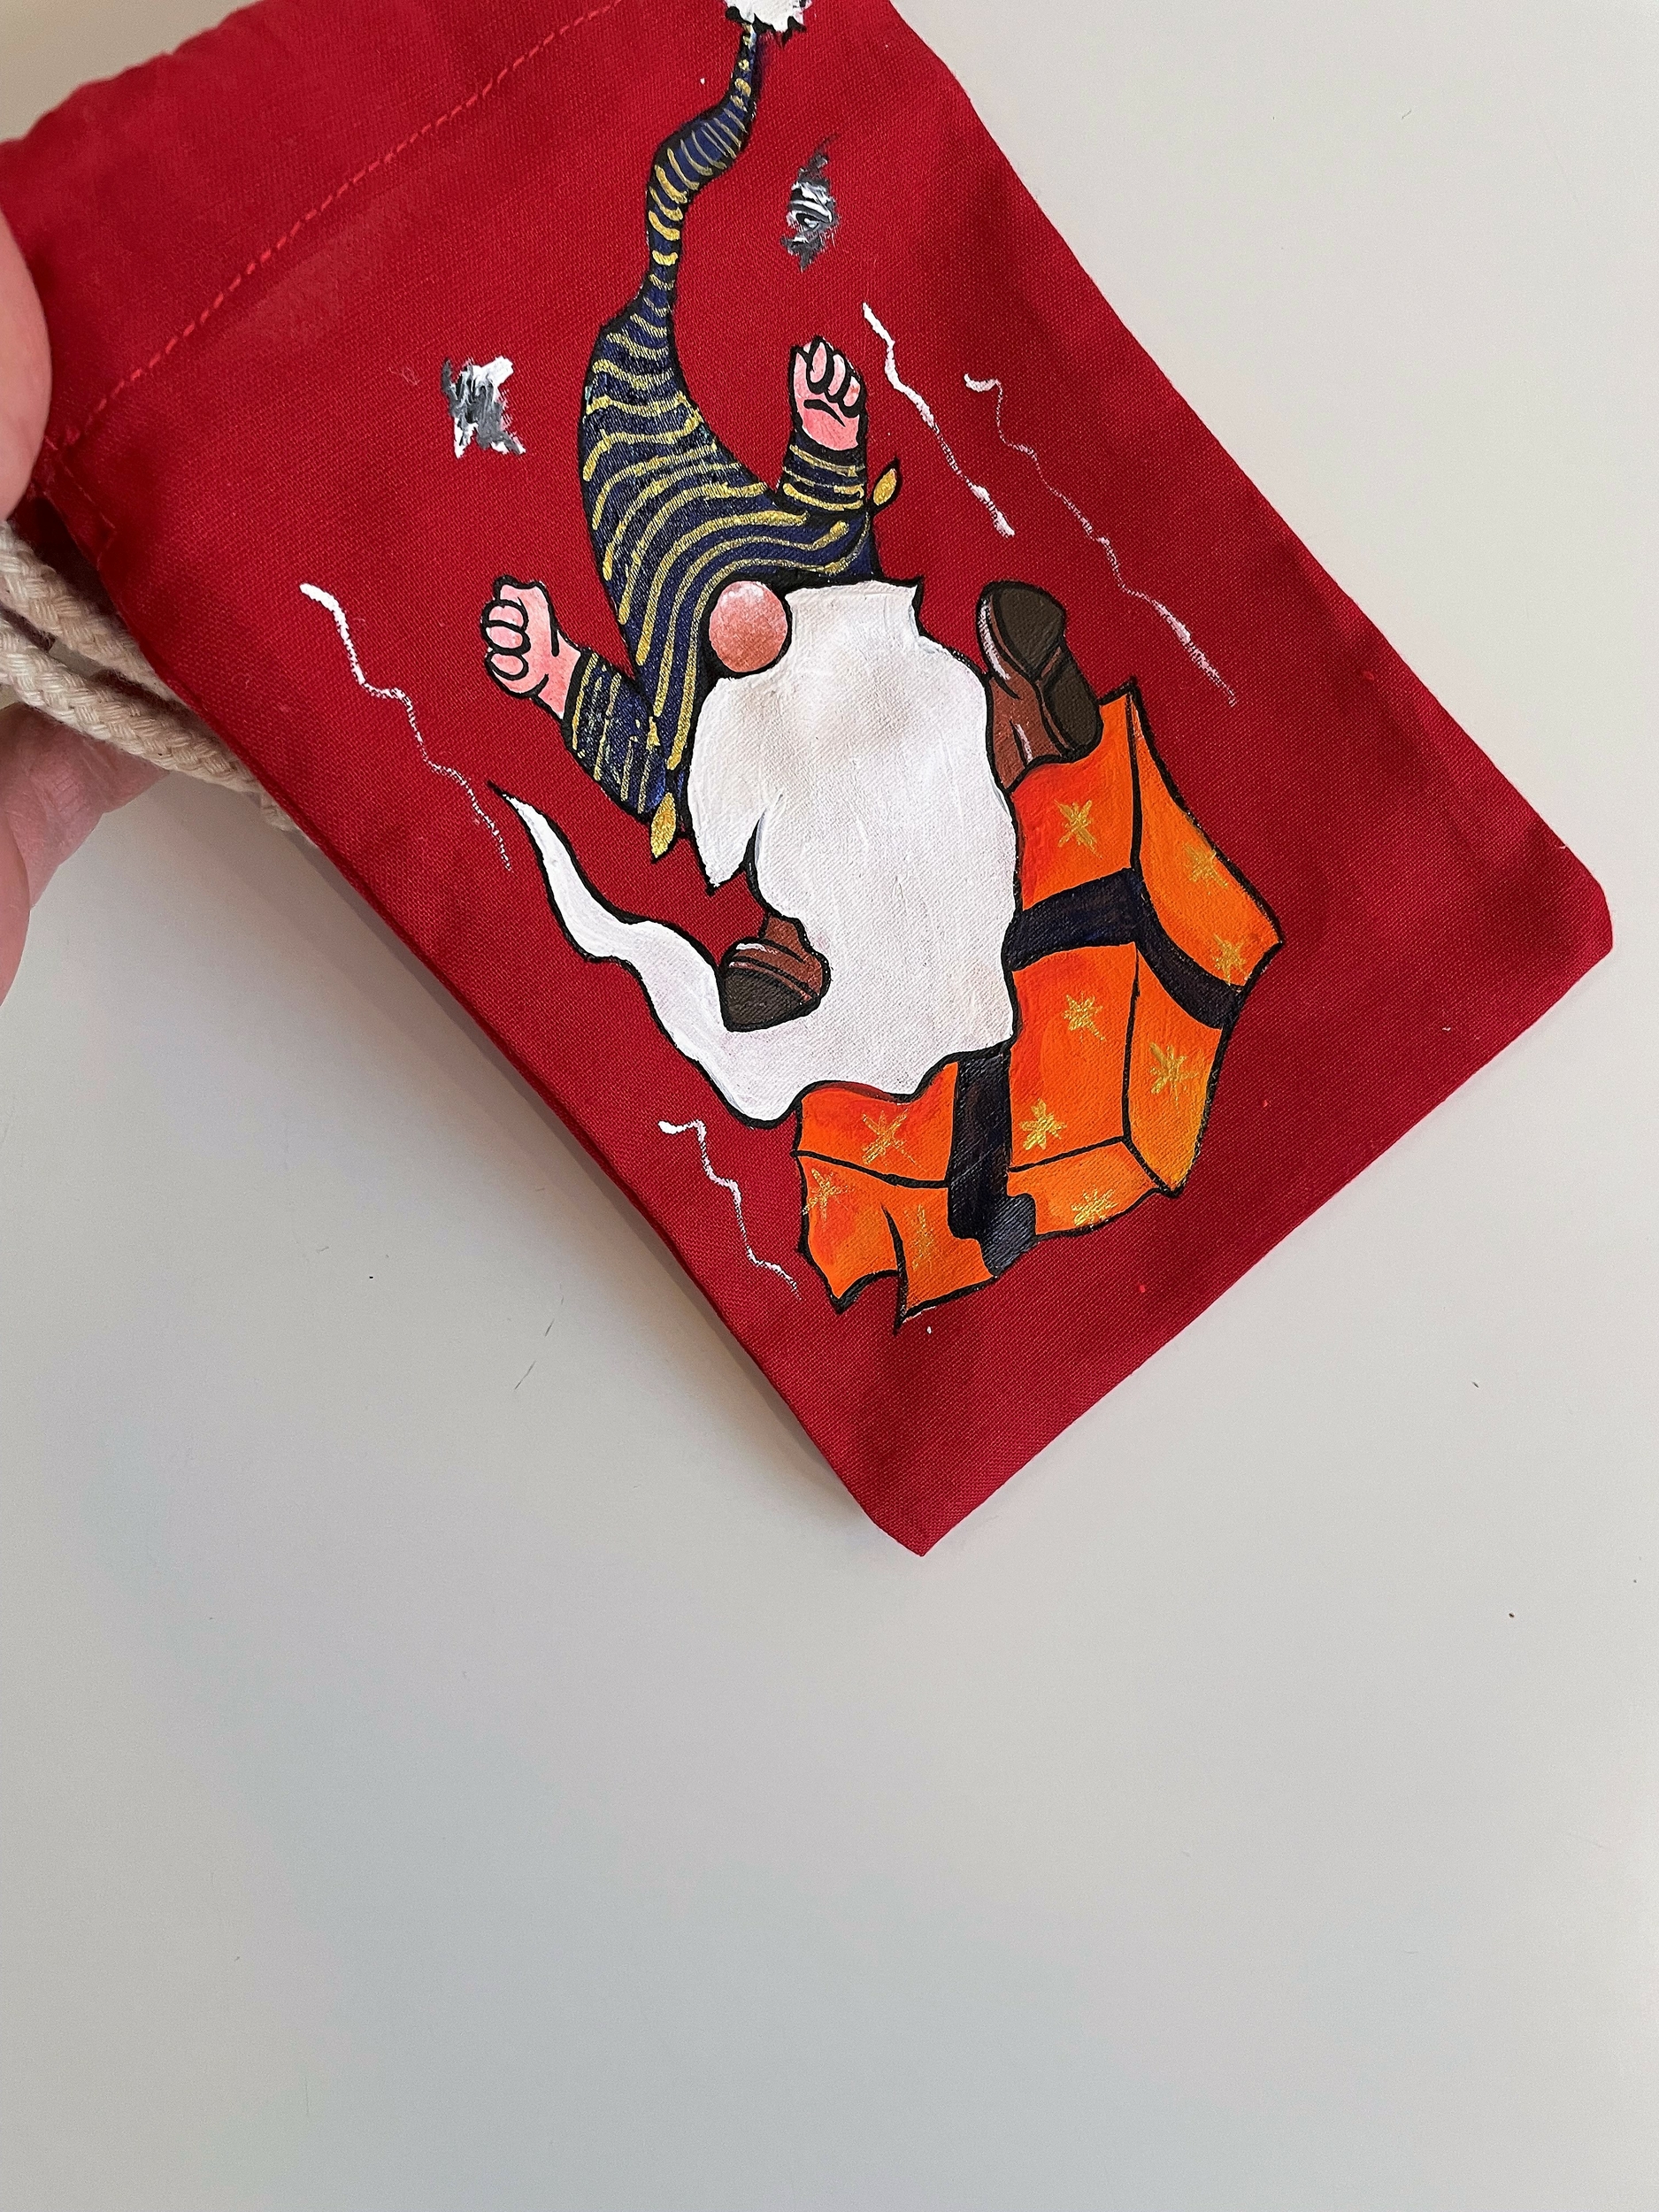 Pochon nain de Noël grincheux peint à la main, en rouge